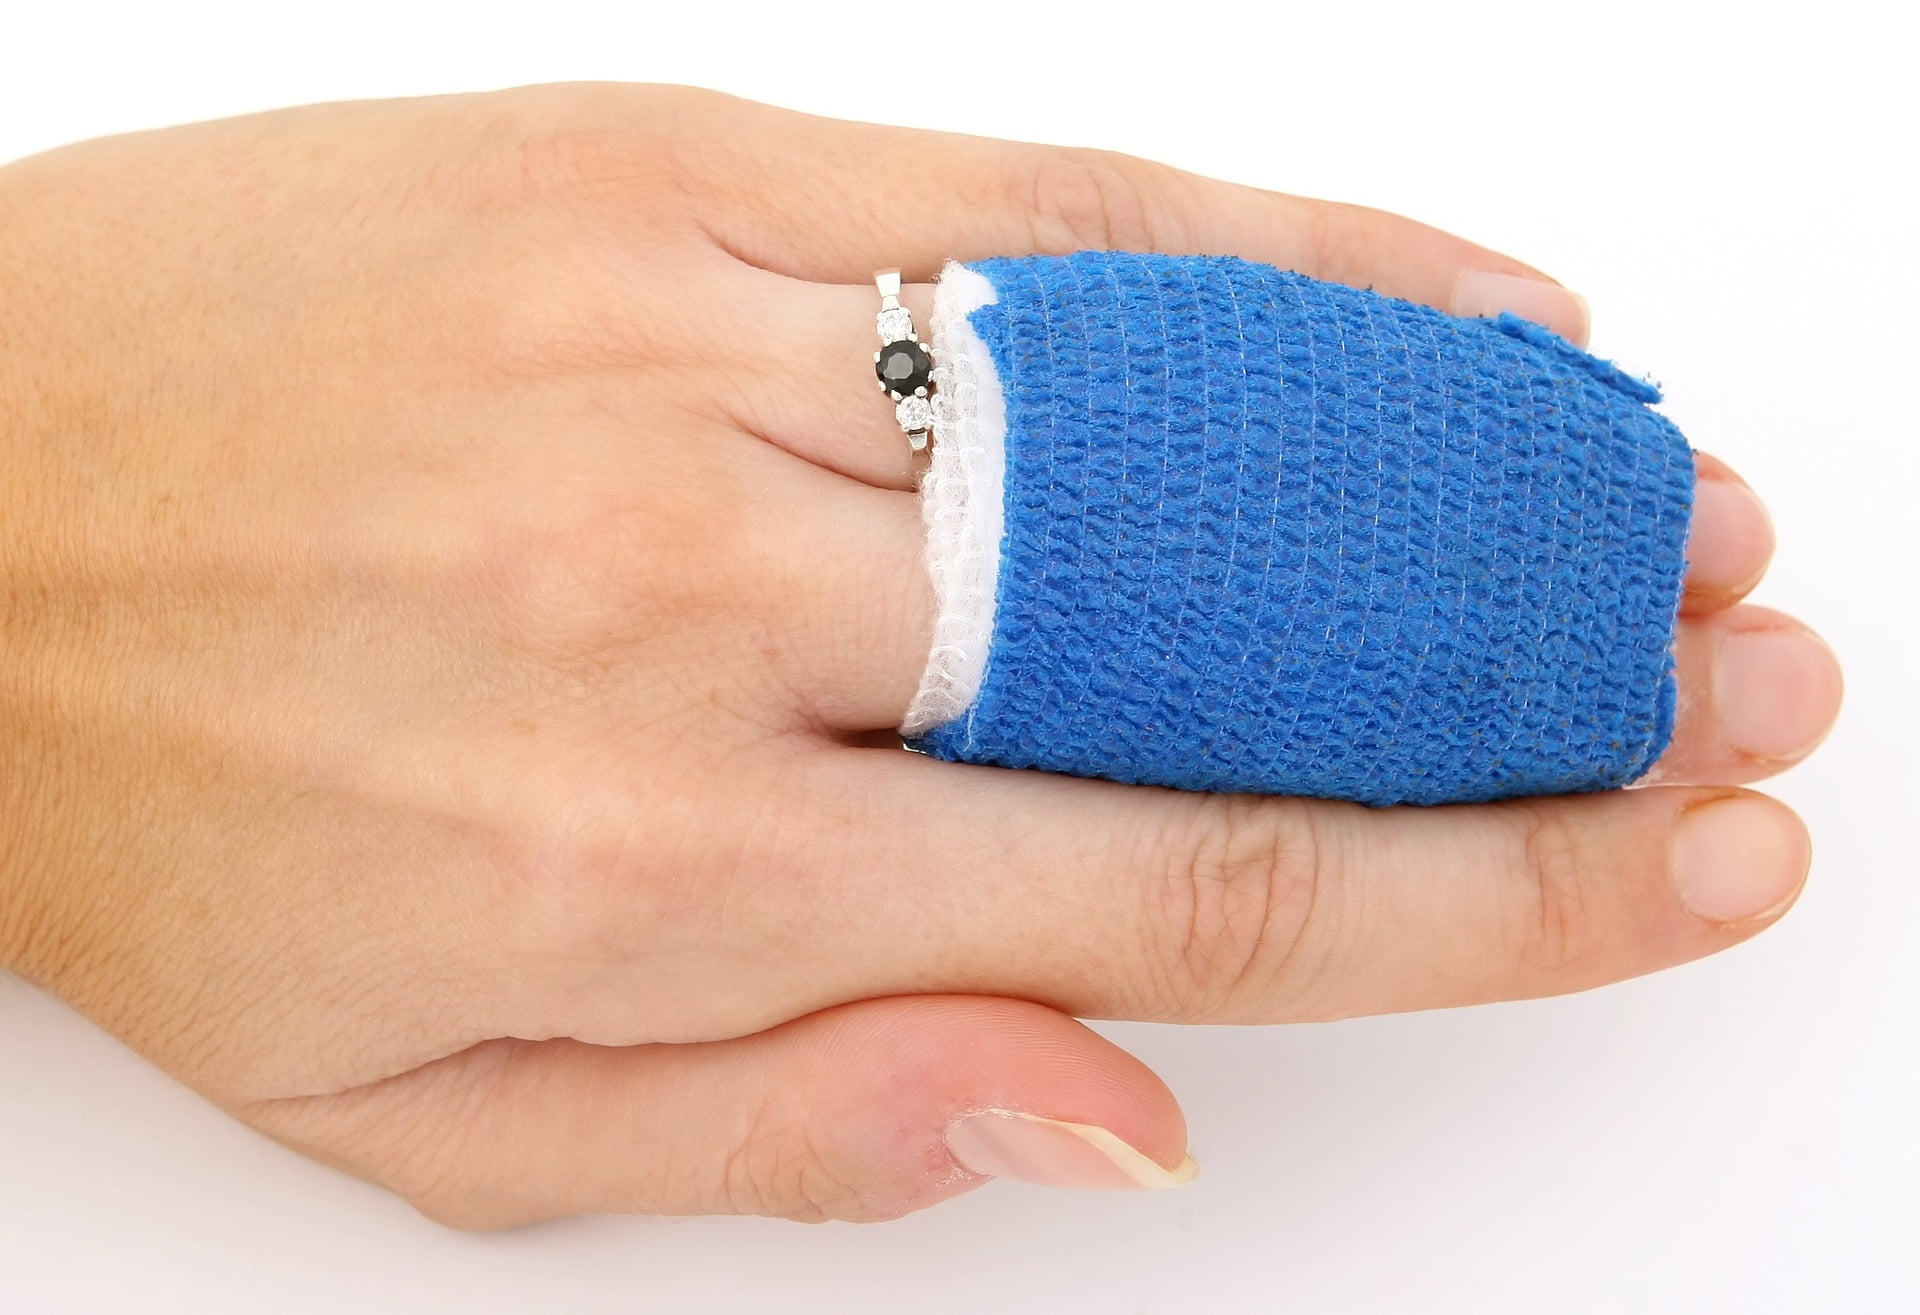 Photo of bandage over fingers